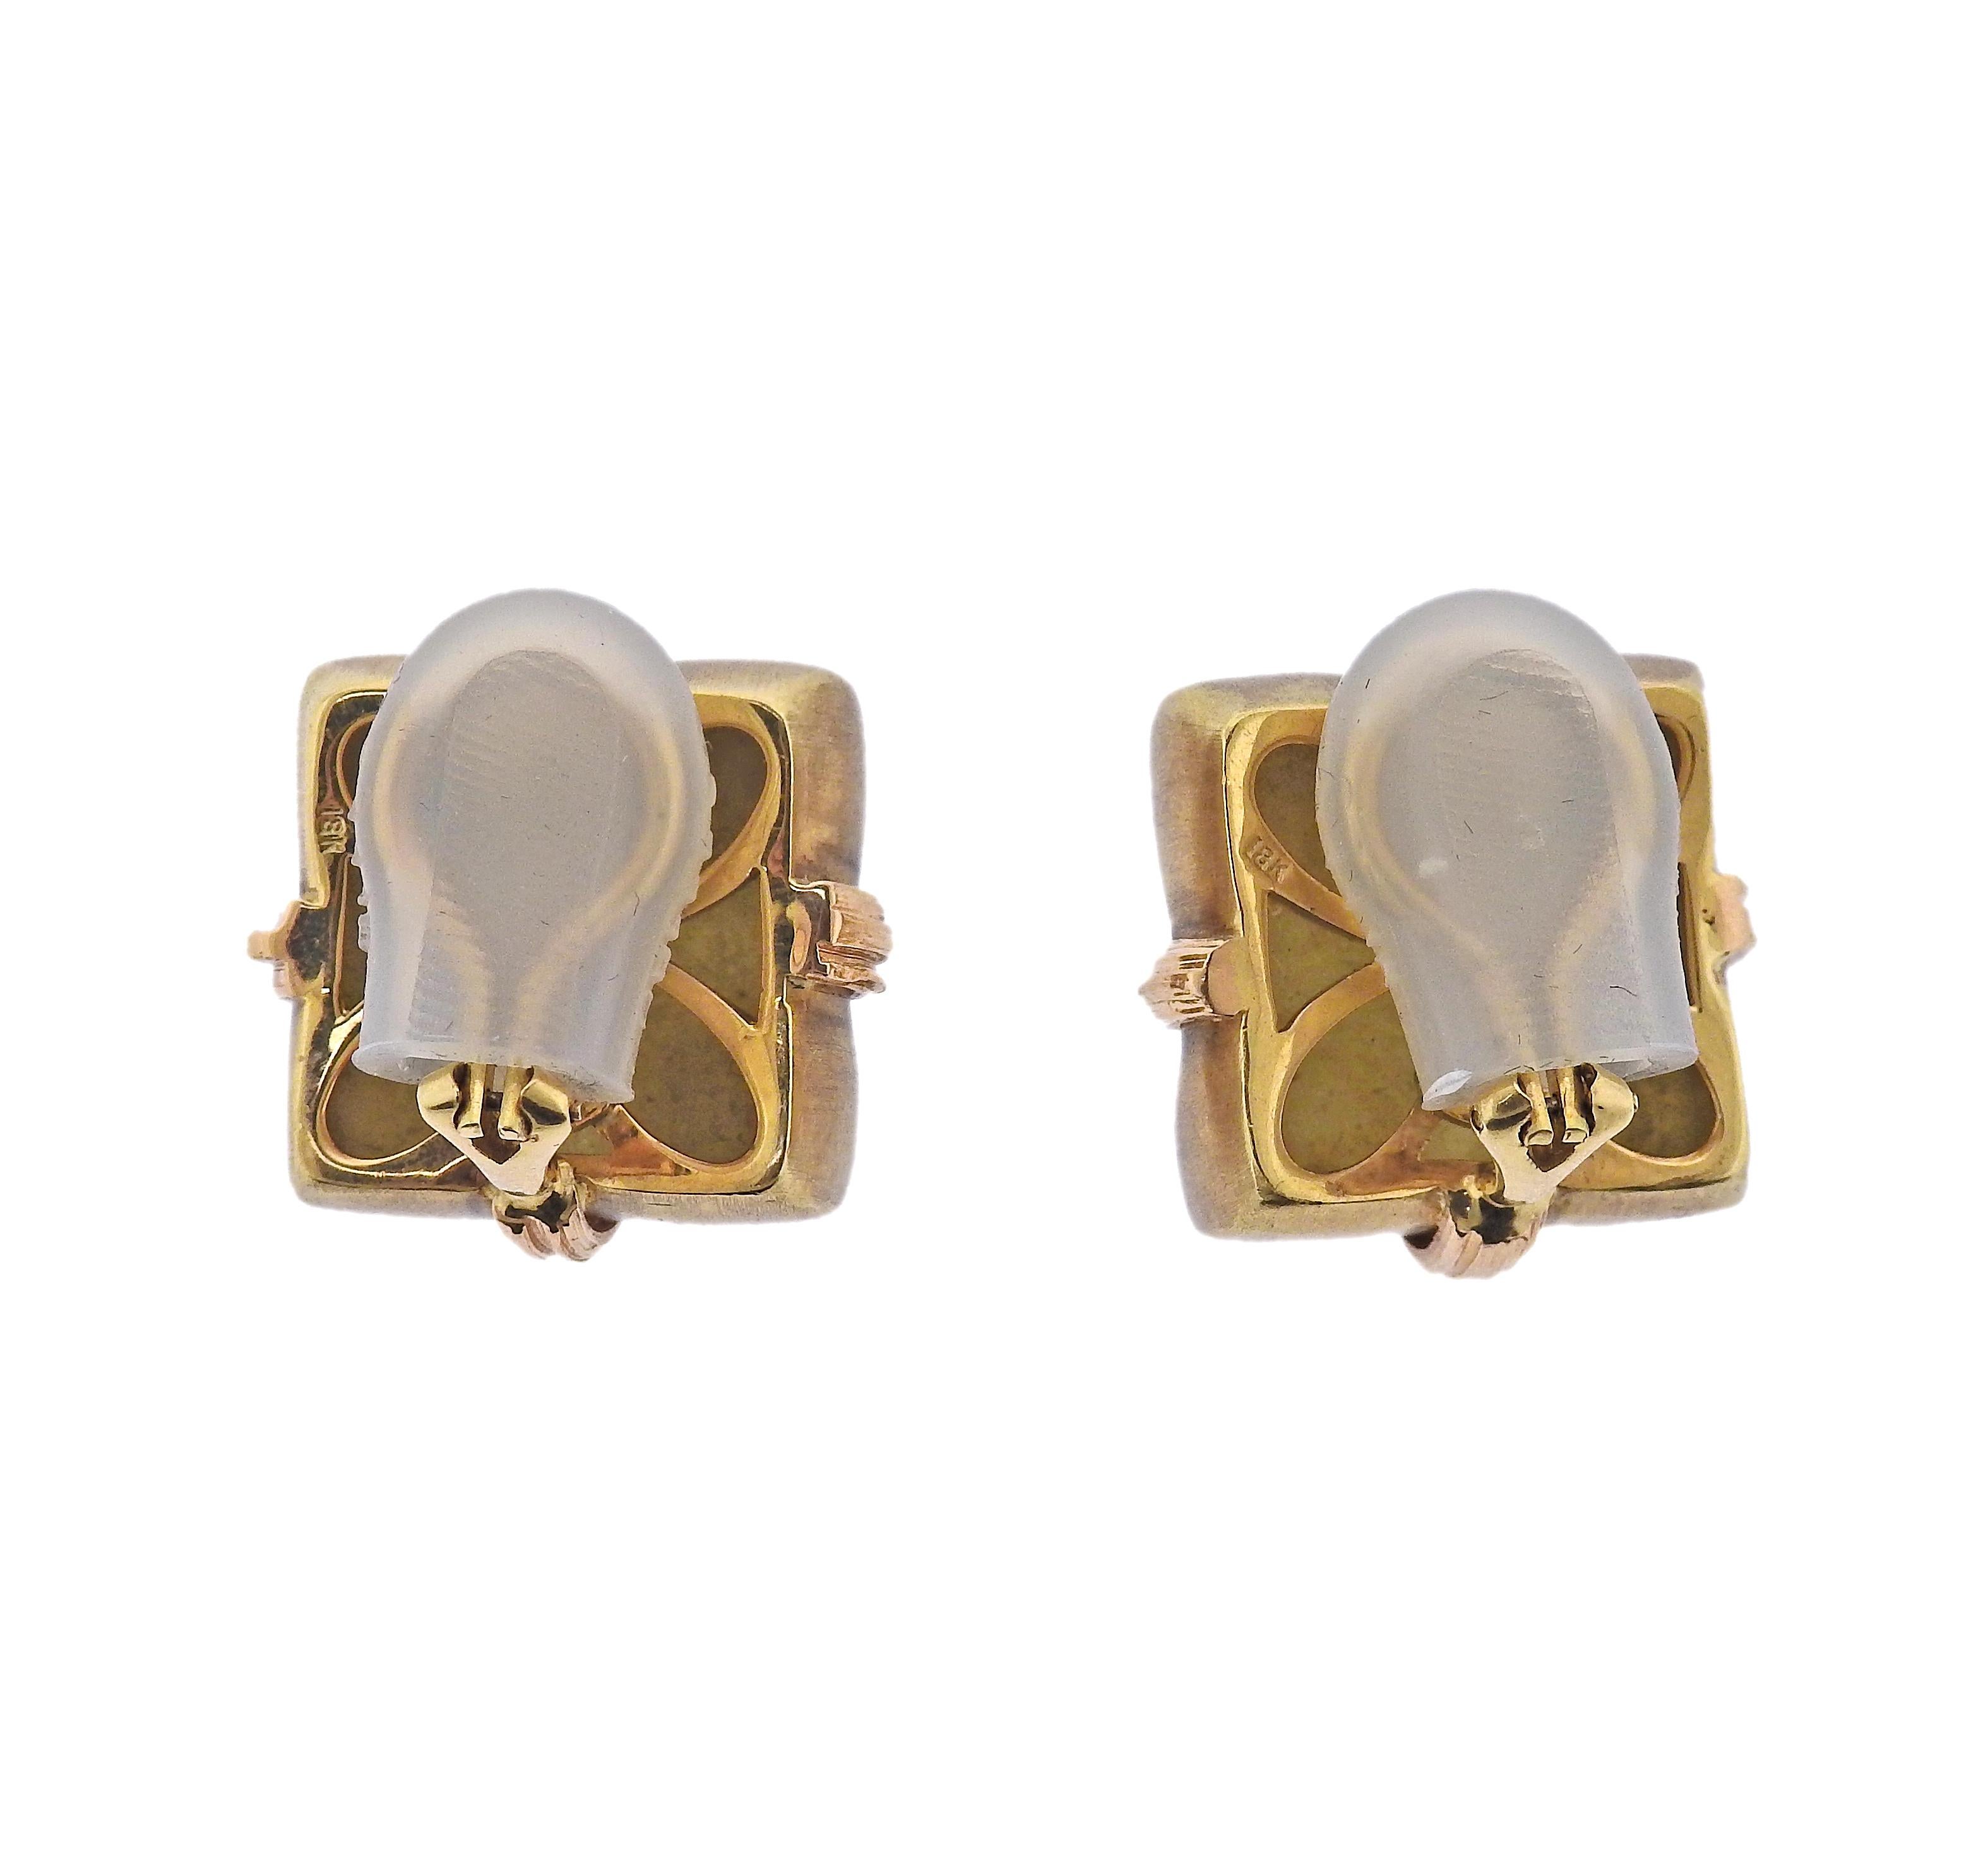 Pair of 18k gold earrings by Asprey. Earrings measure 21mm x 21mm. Marked: 18k, Asprey. Weight - 30.5 grams.